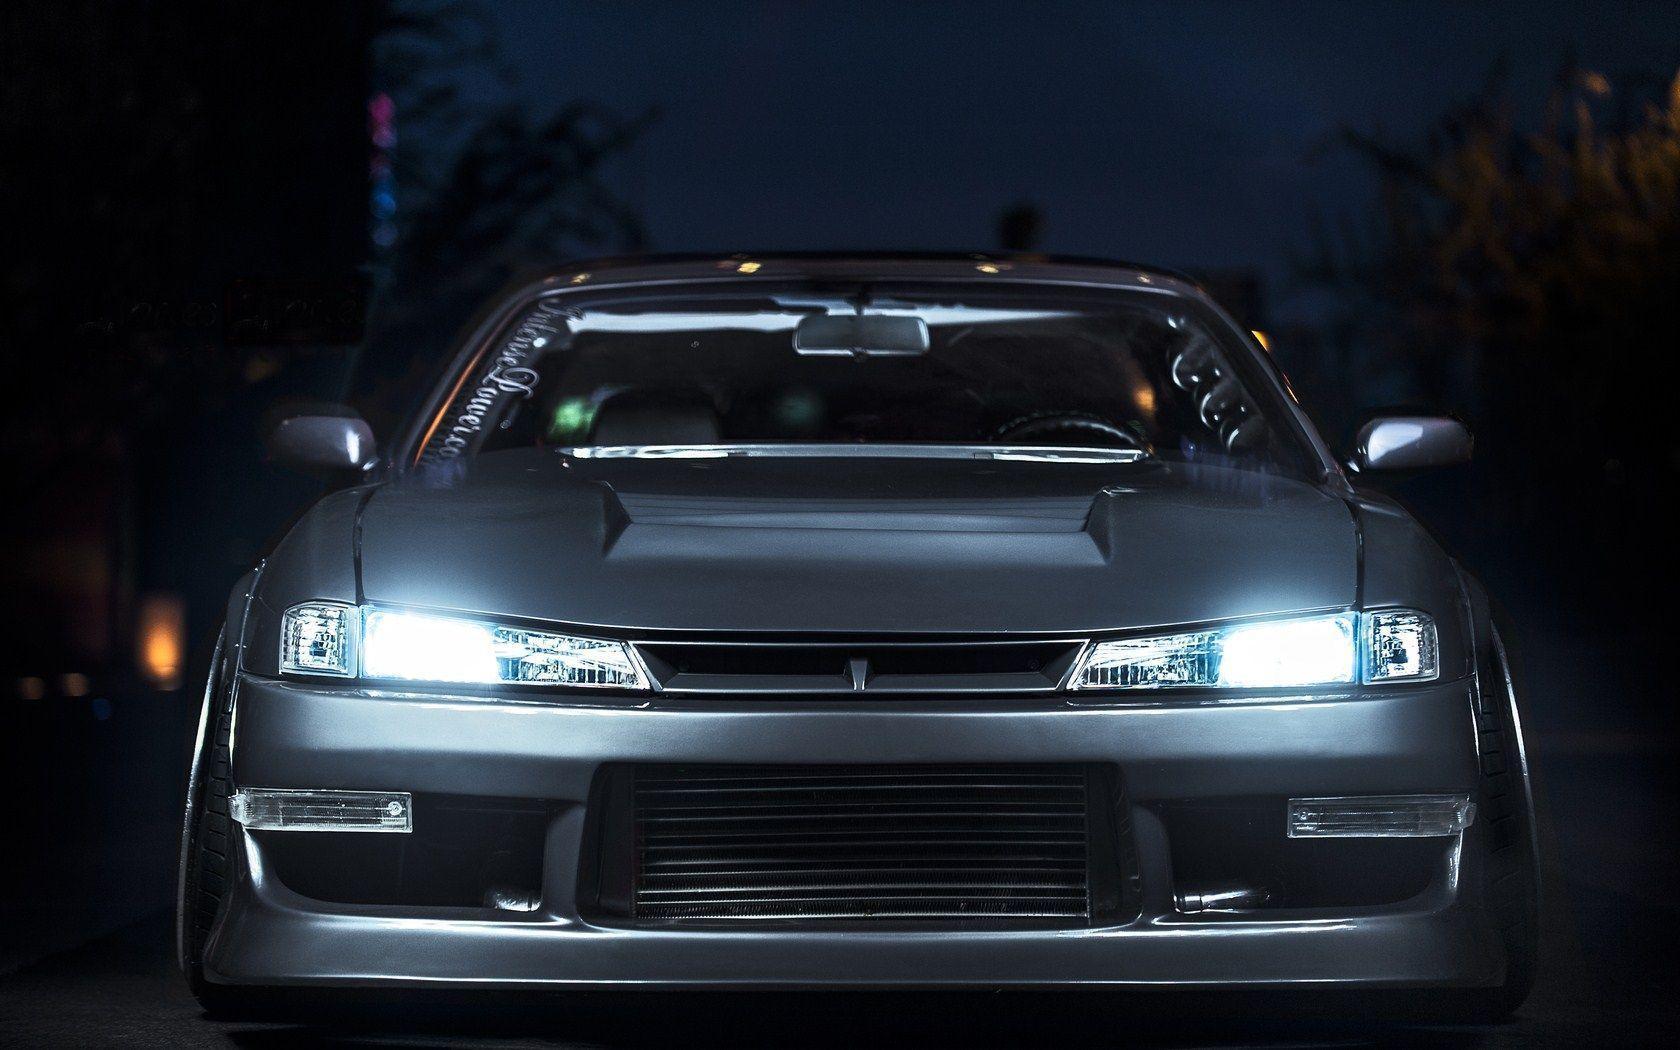 Nissan Silvia S14 Wallpaper HD Widescreen. Hdwidescreens